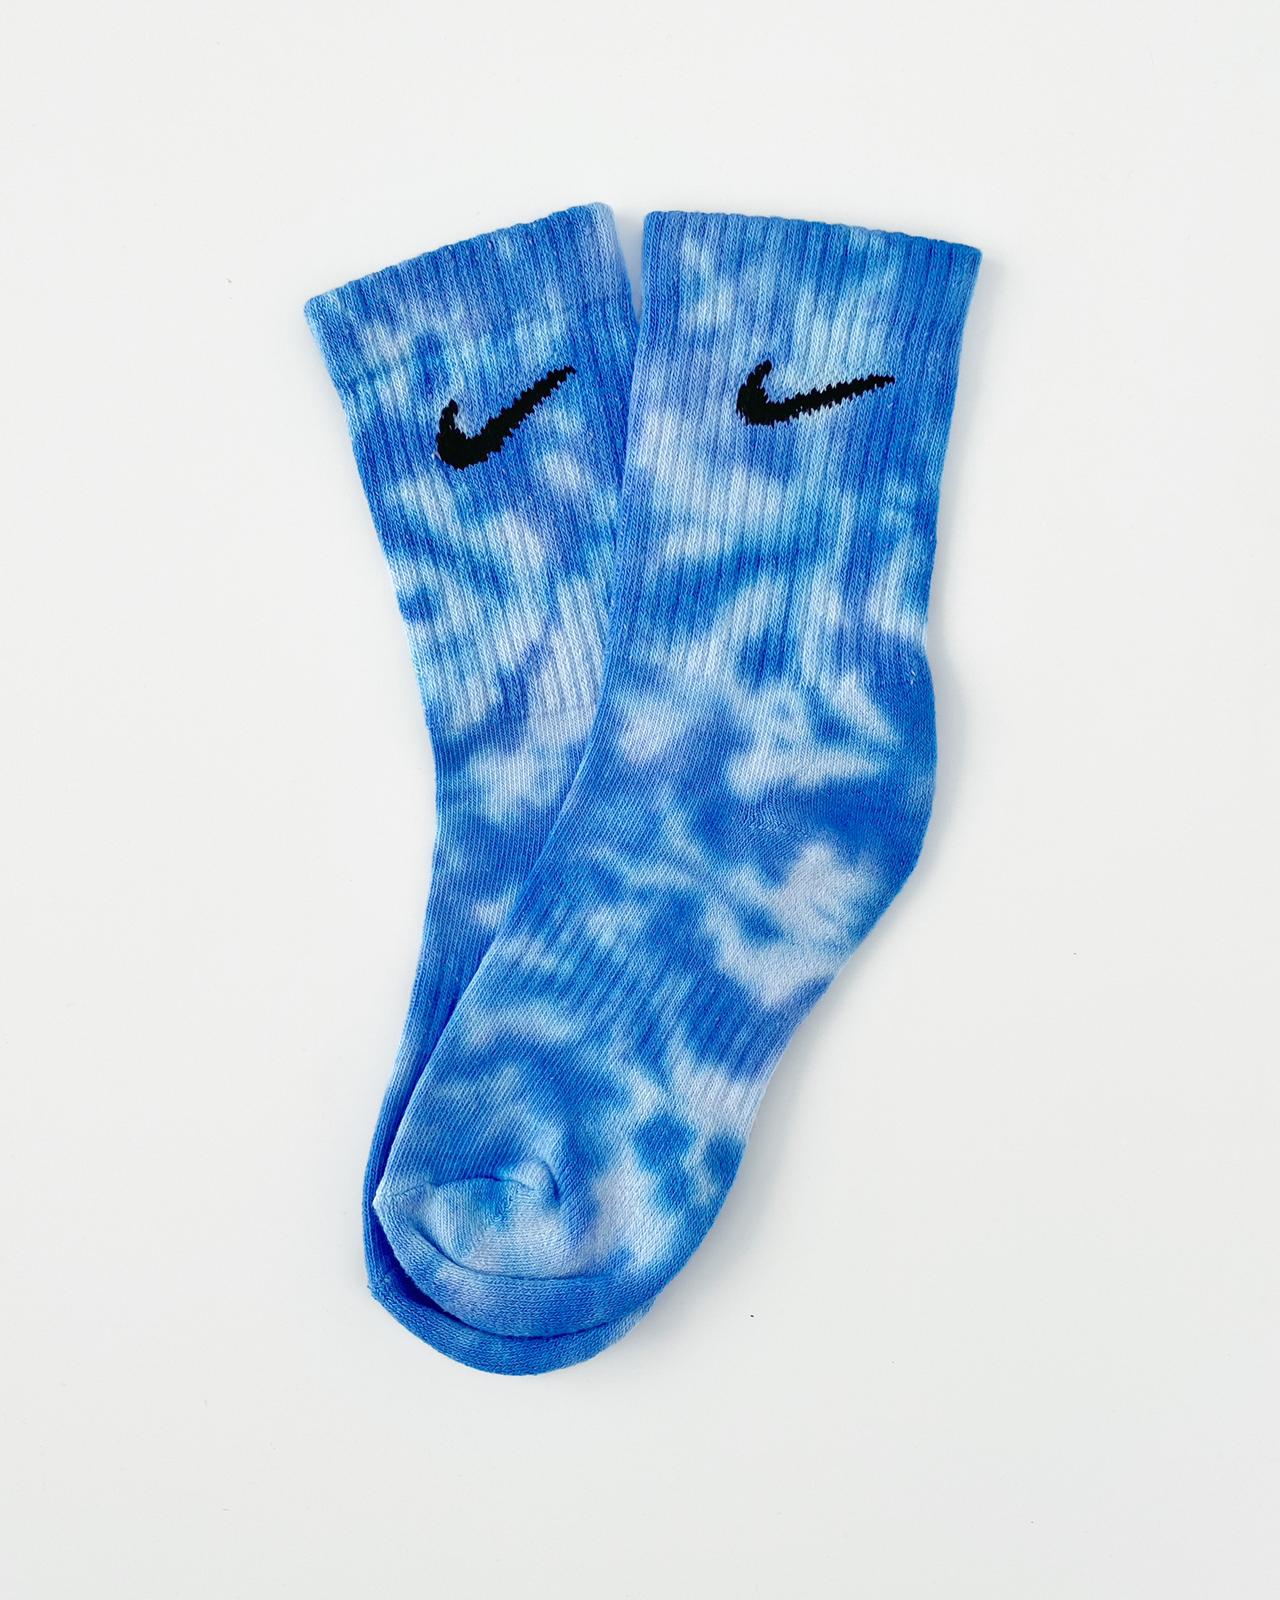 Calcetines Nike tie dye Blue Ocean cruzado. Calcetines Nike 100% originales teñidos a mano novo. Shop NOW!